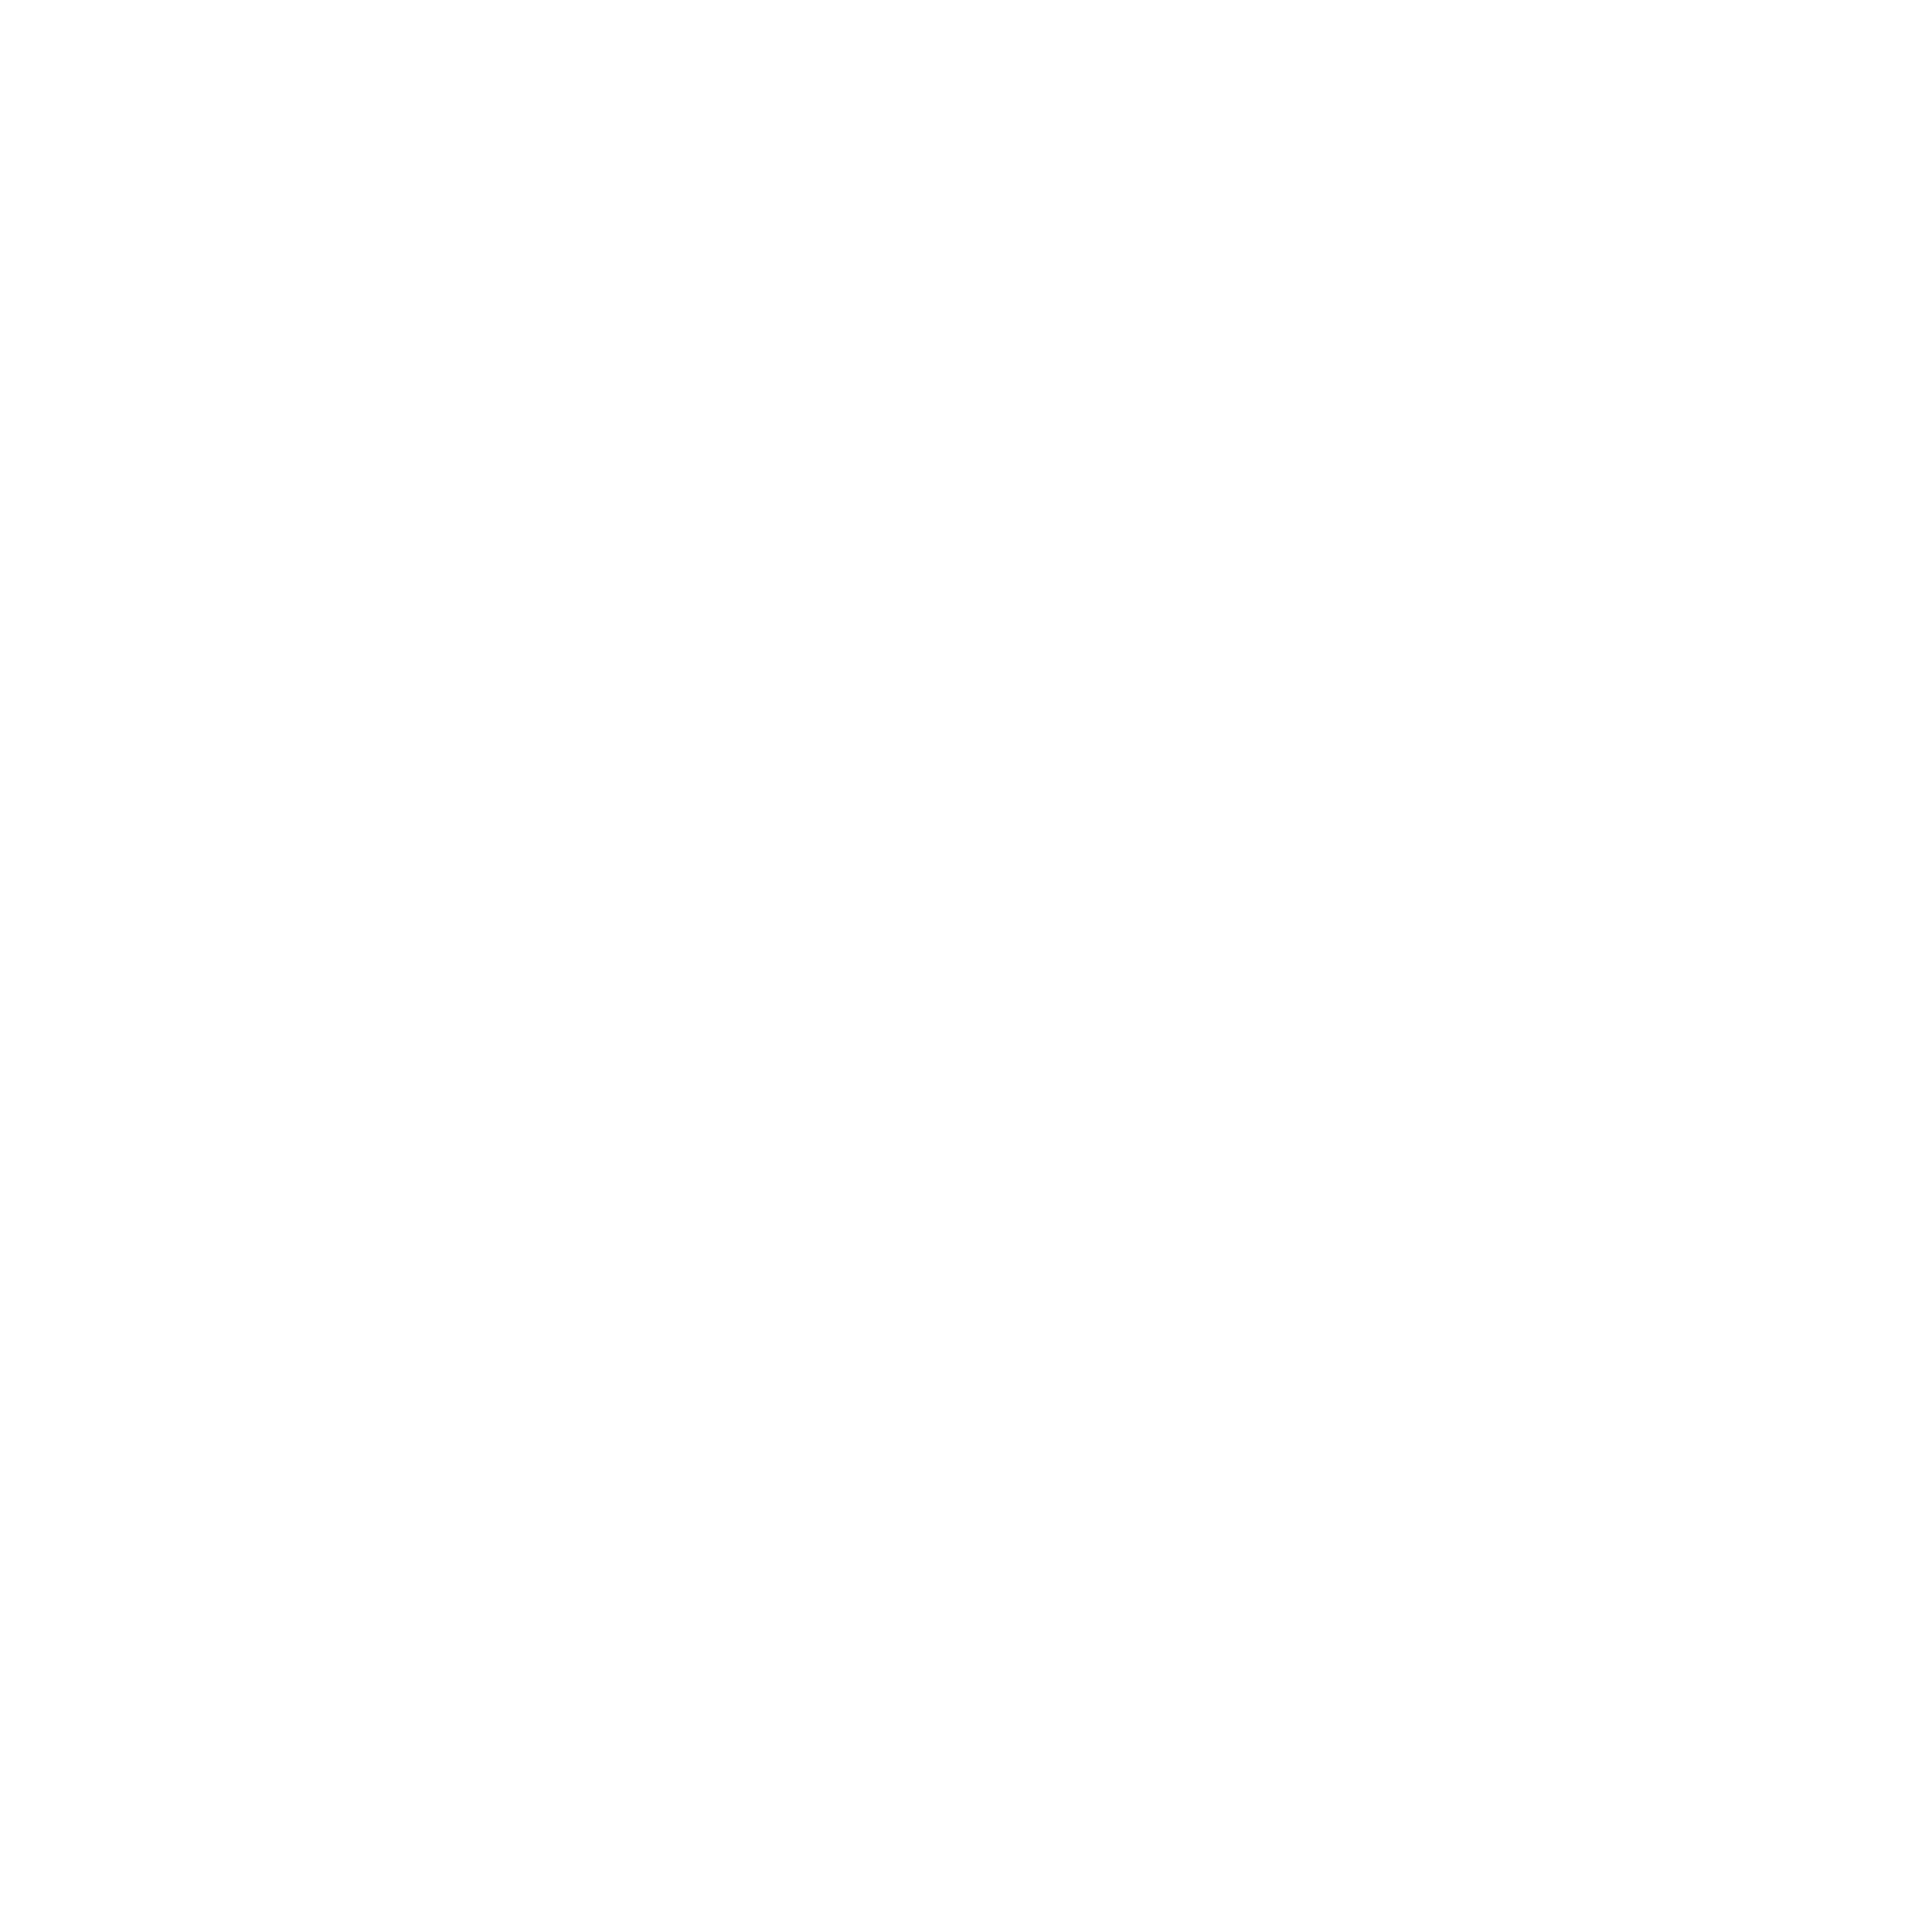 EZPZ Marquee